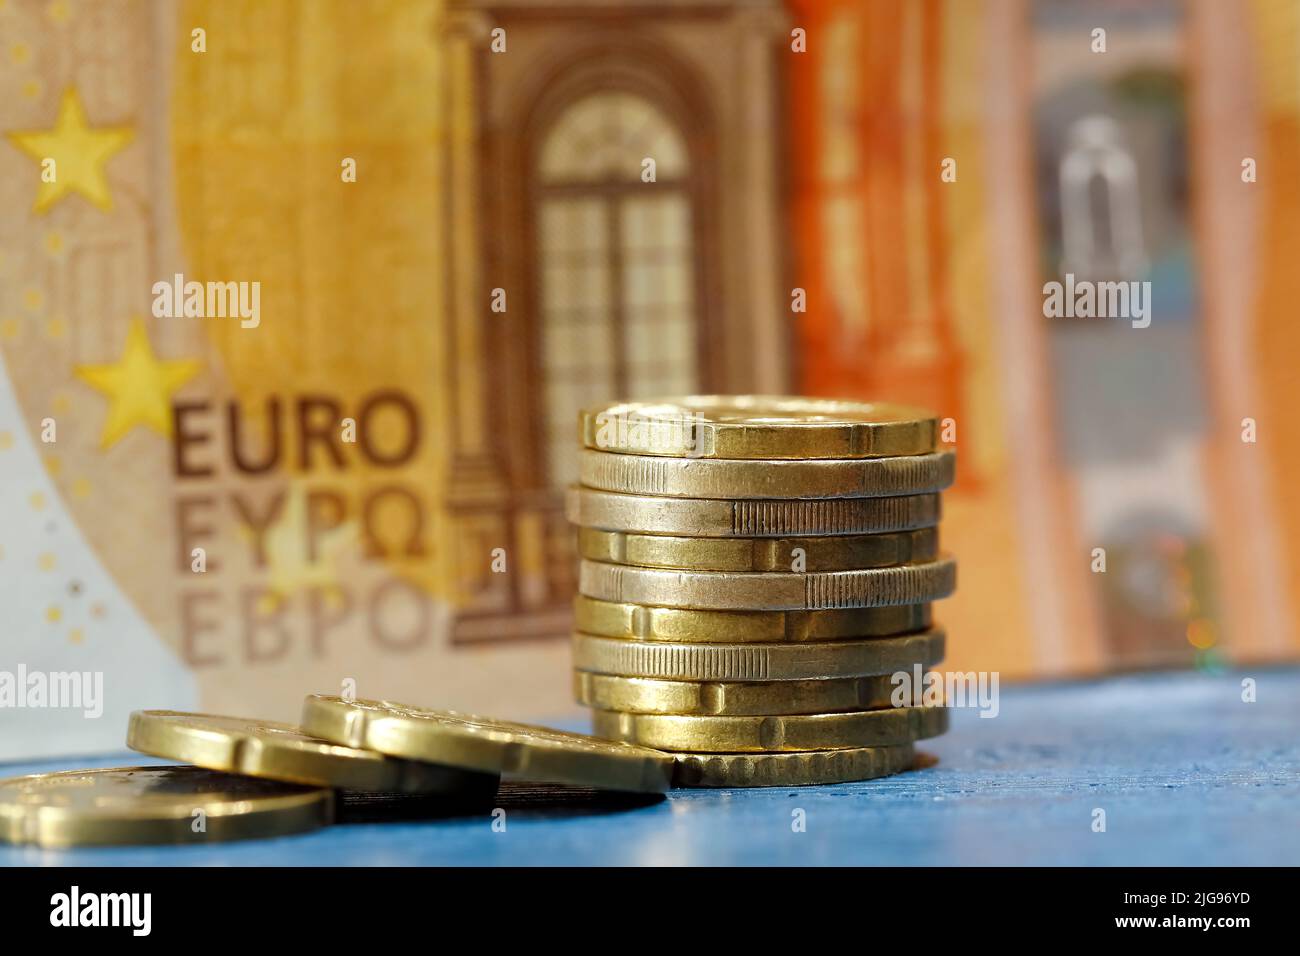 Aquí están las monedas y un billete. La moneda de la zona del euro está en circulación desde 2002. Foto de stock